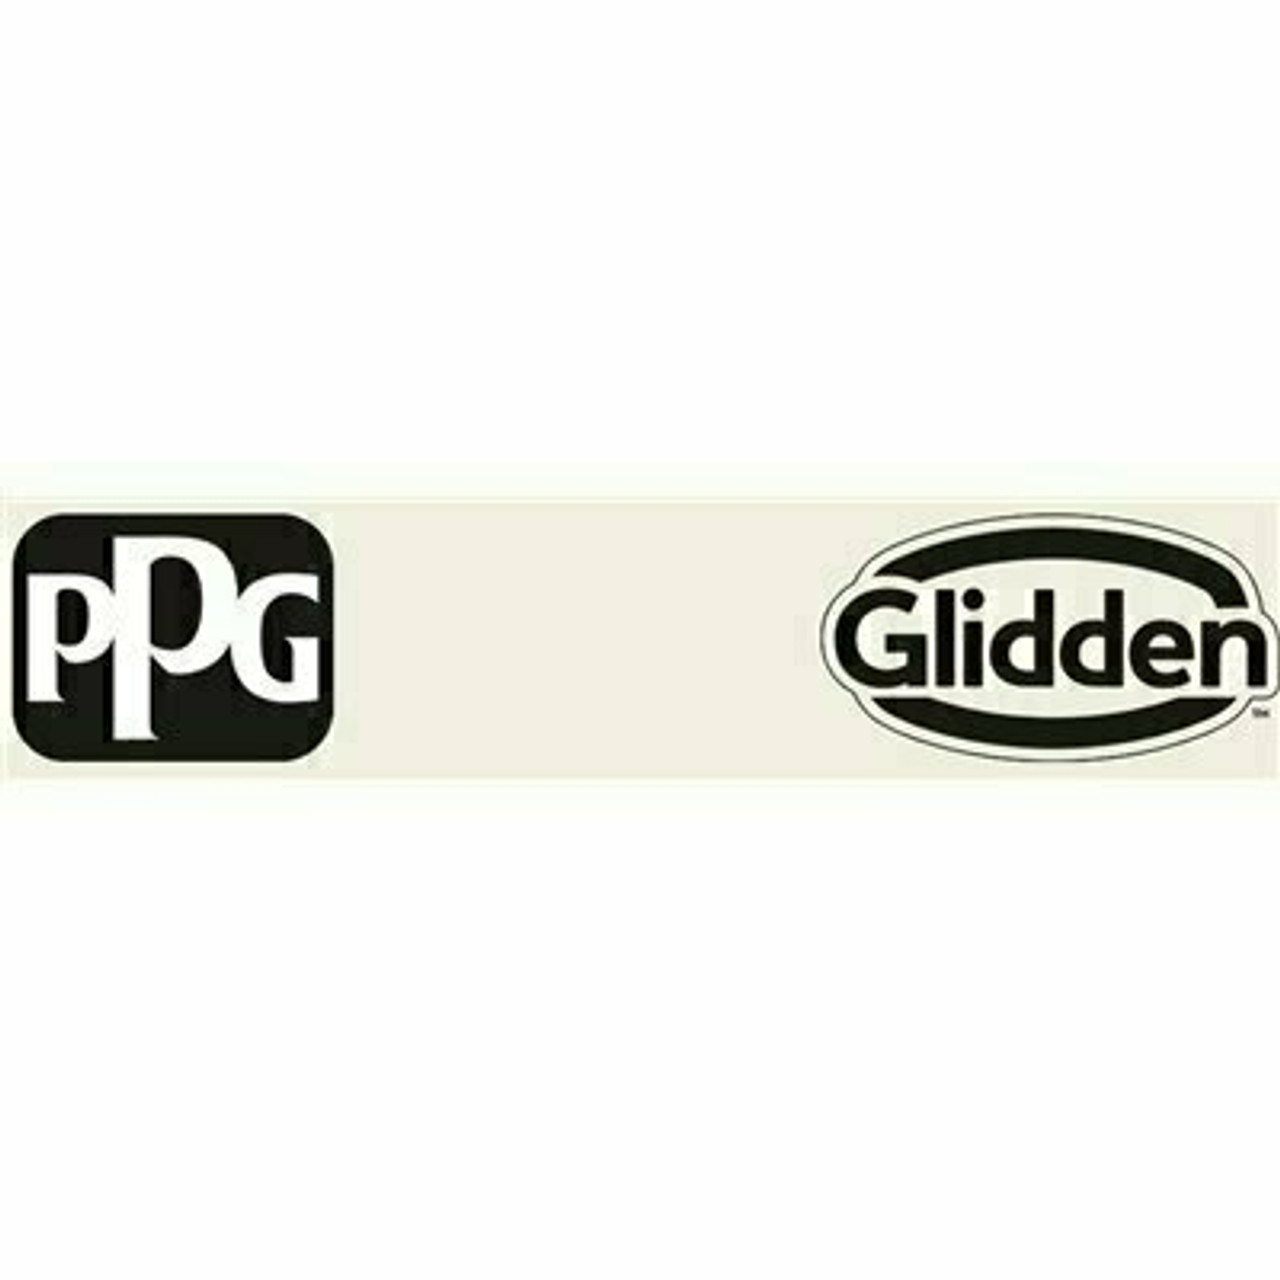 Glidden Premium 1 Gal. #Ppg1006-1 Gypsum Satin Interior Latex Paint